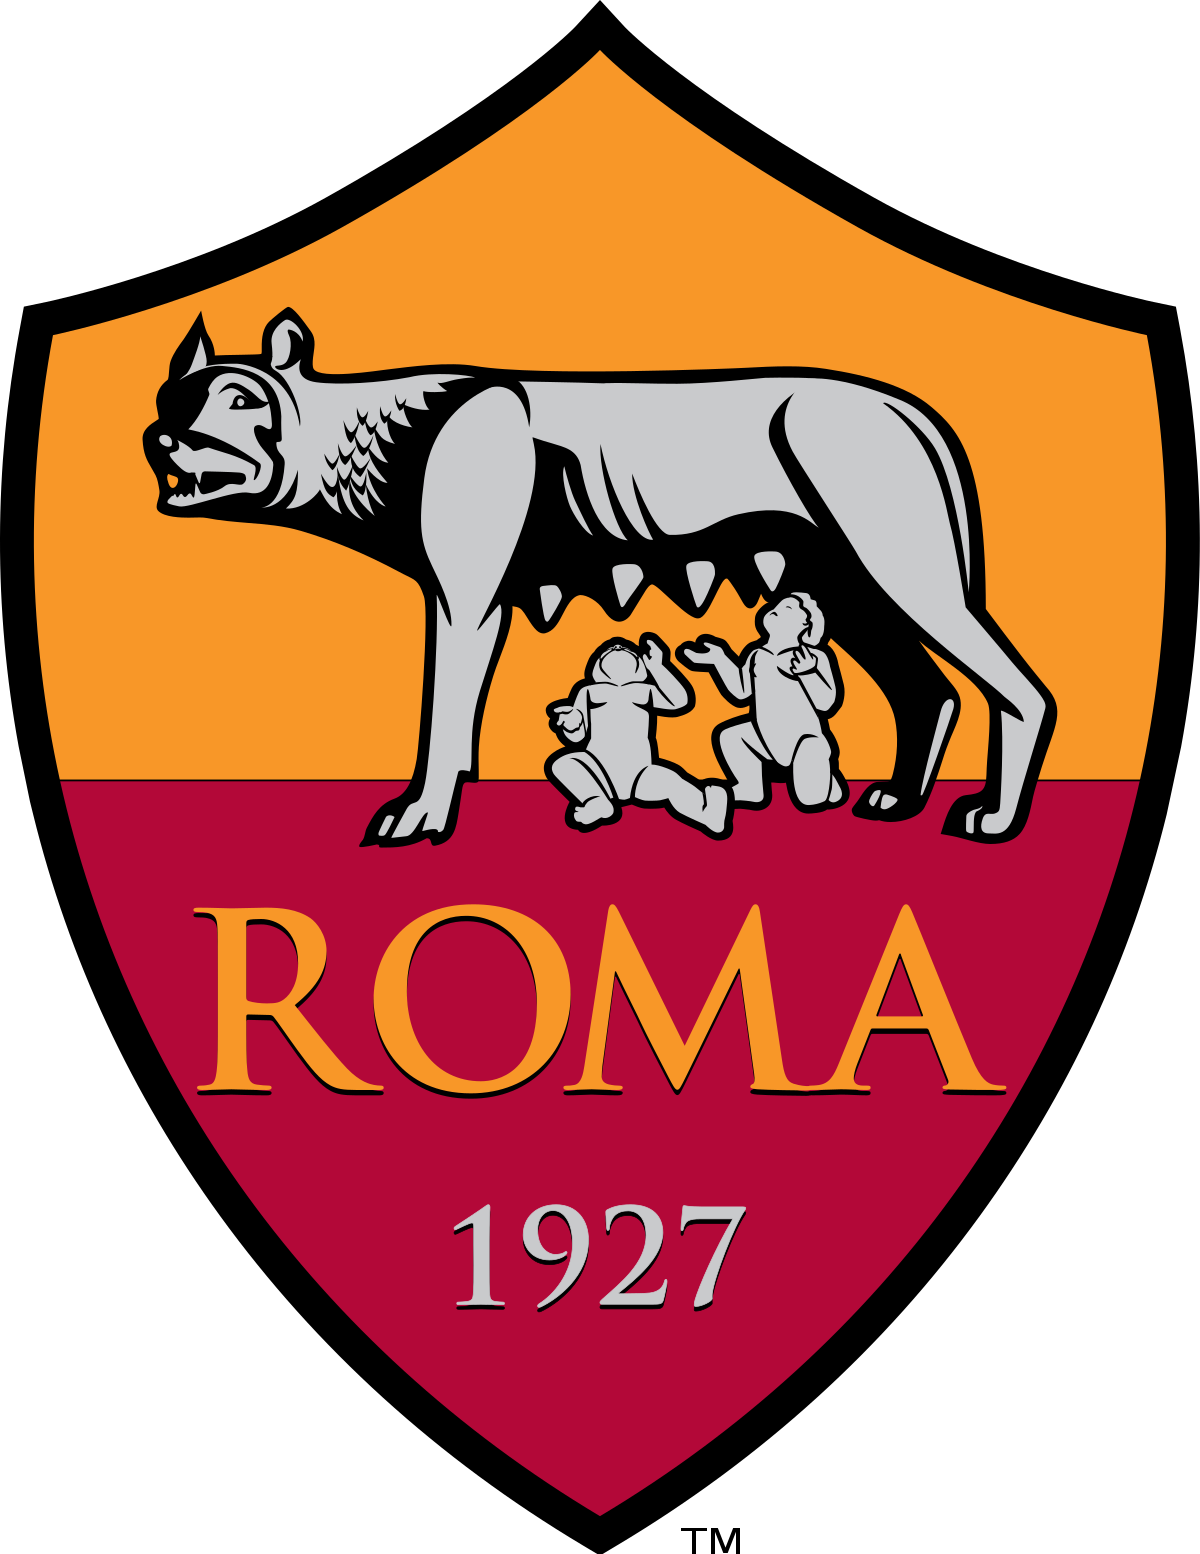 AS Roma: 3. logo 80u0027s